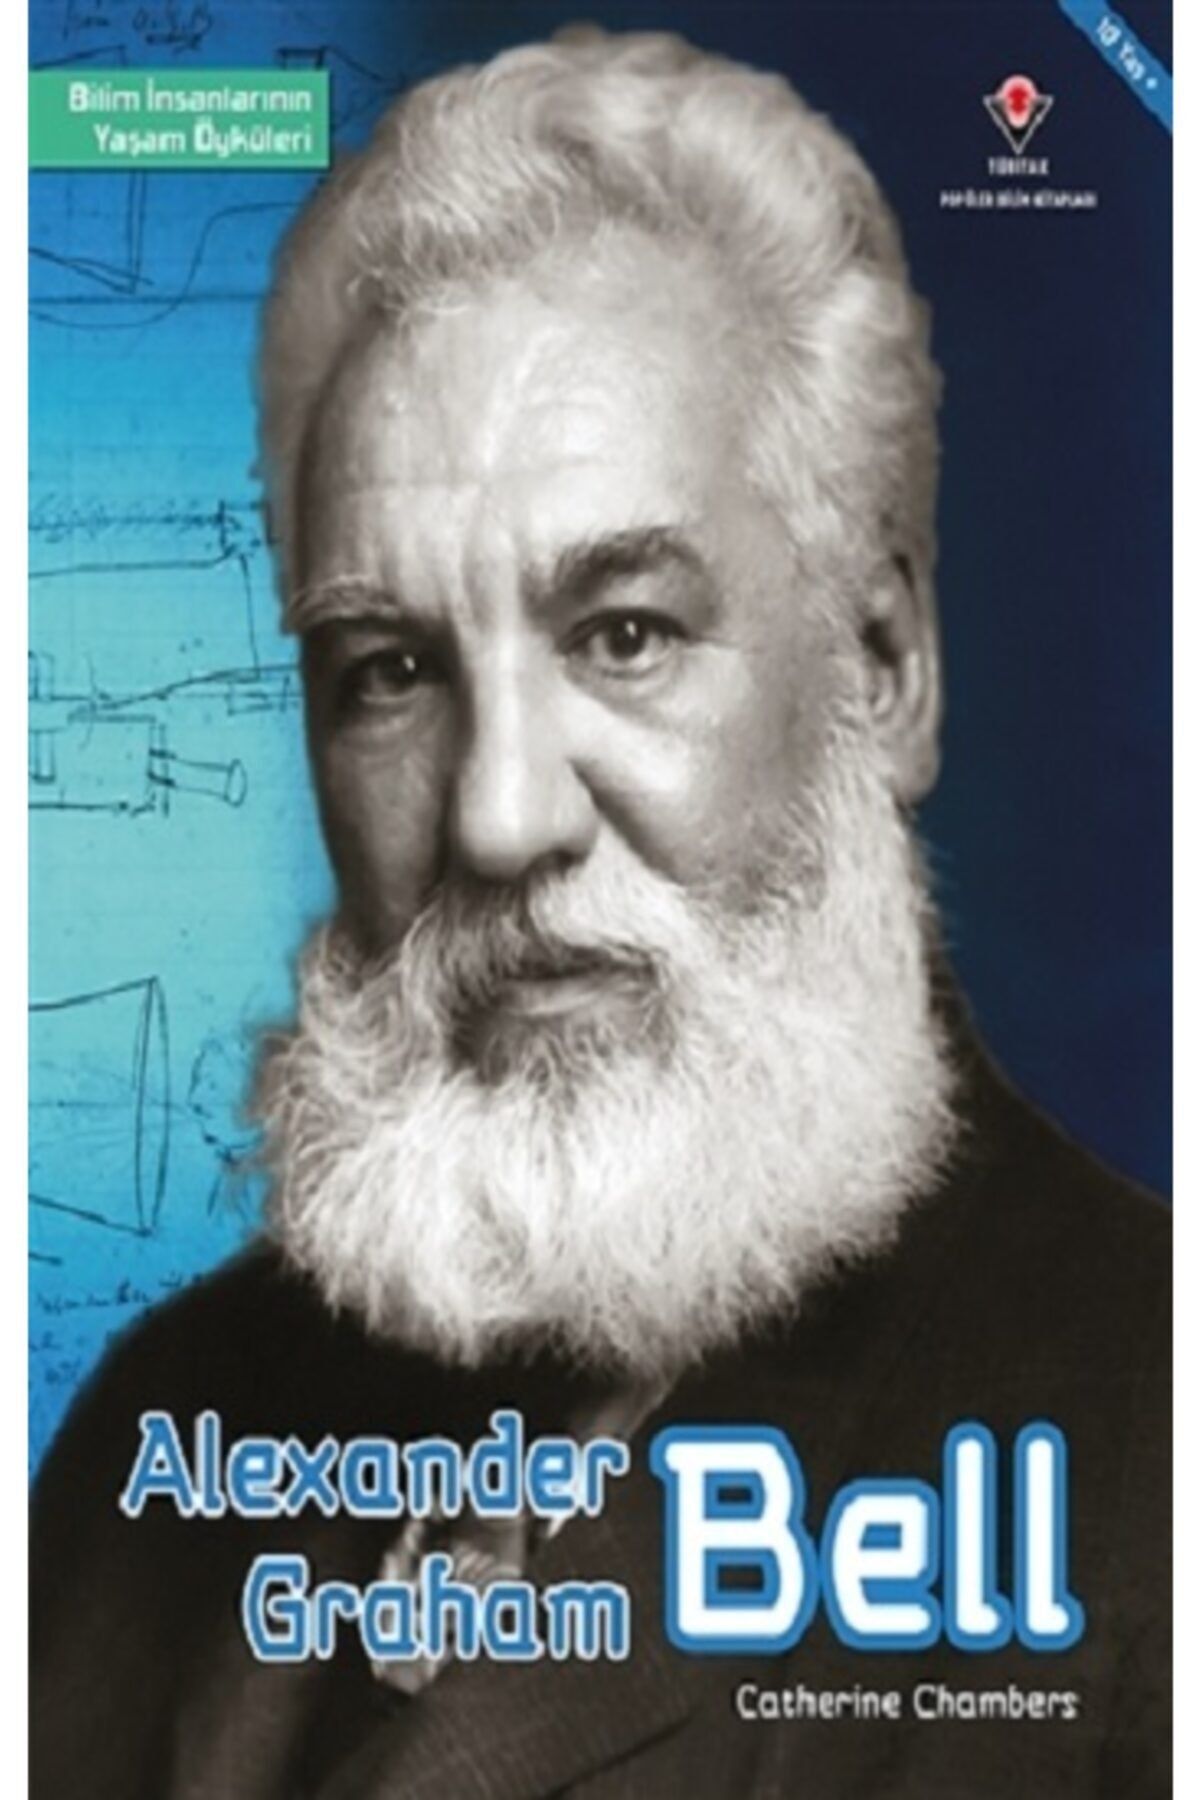 Tübitak Yayınları Alexander Graham Bell - Bilim Insanlarının Yaşam Öyküleri - Cath / - Catherine Chambers